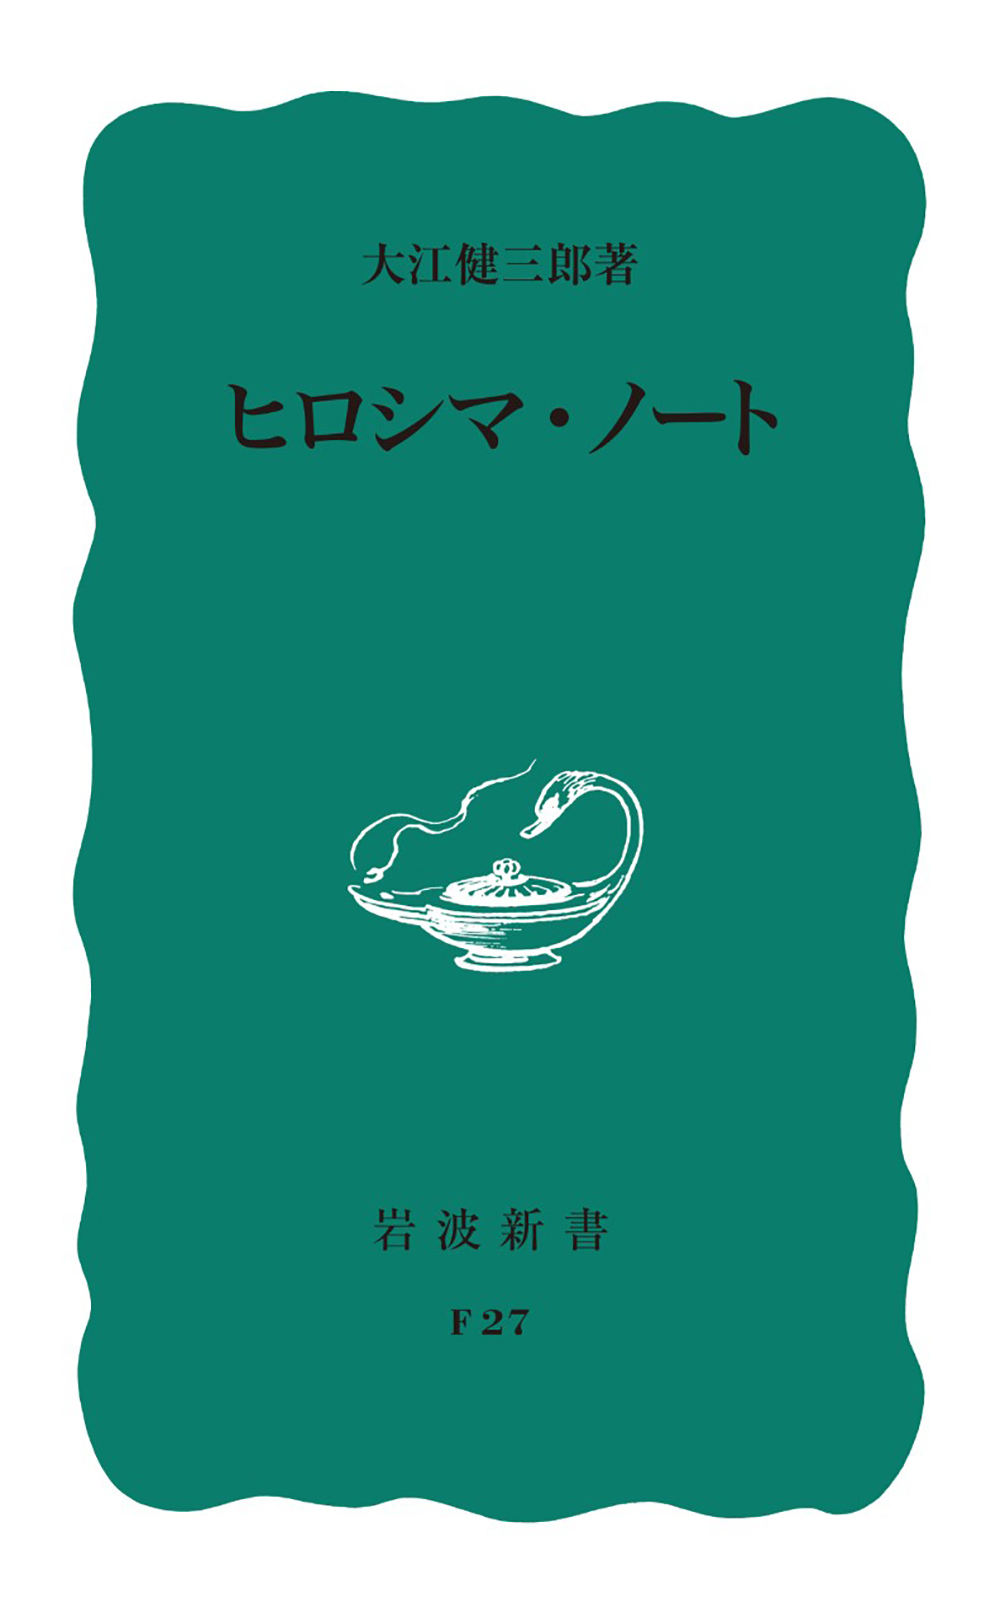 ヒロシマ・ノートの商品画像